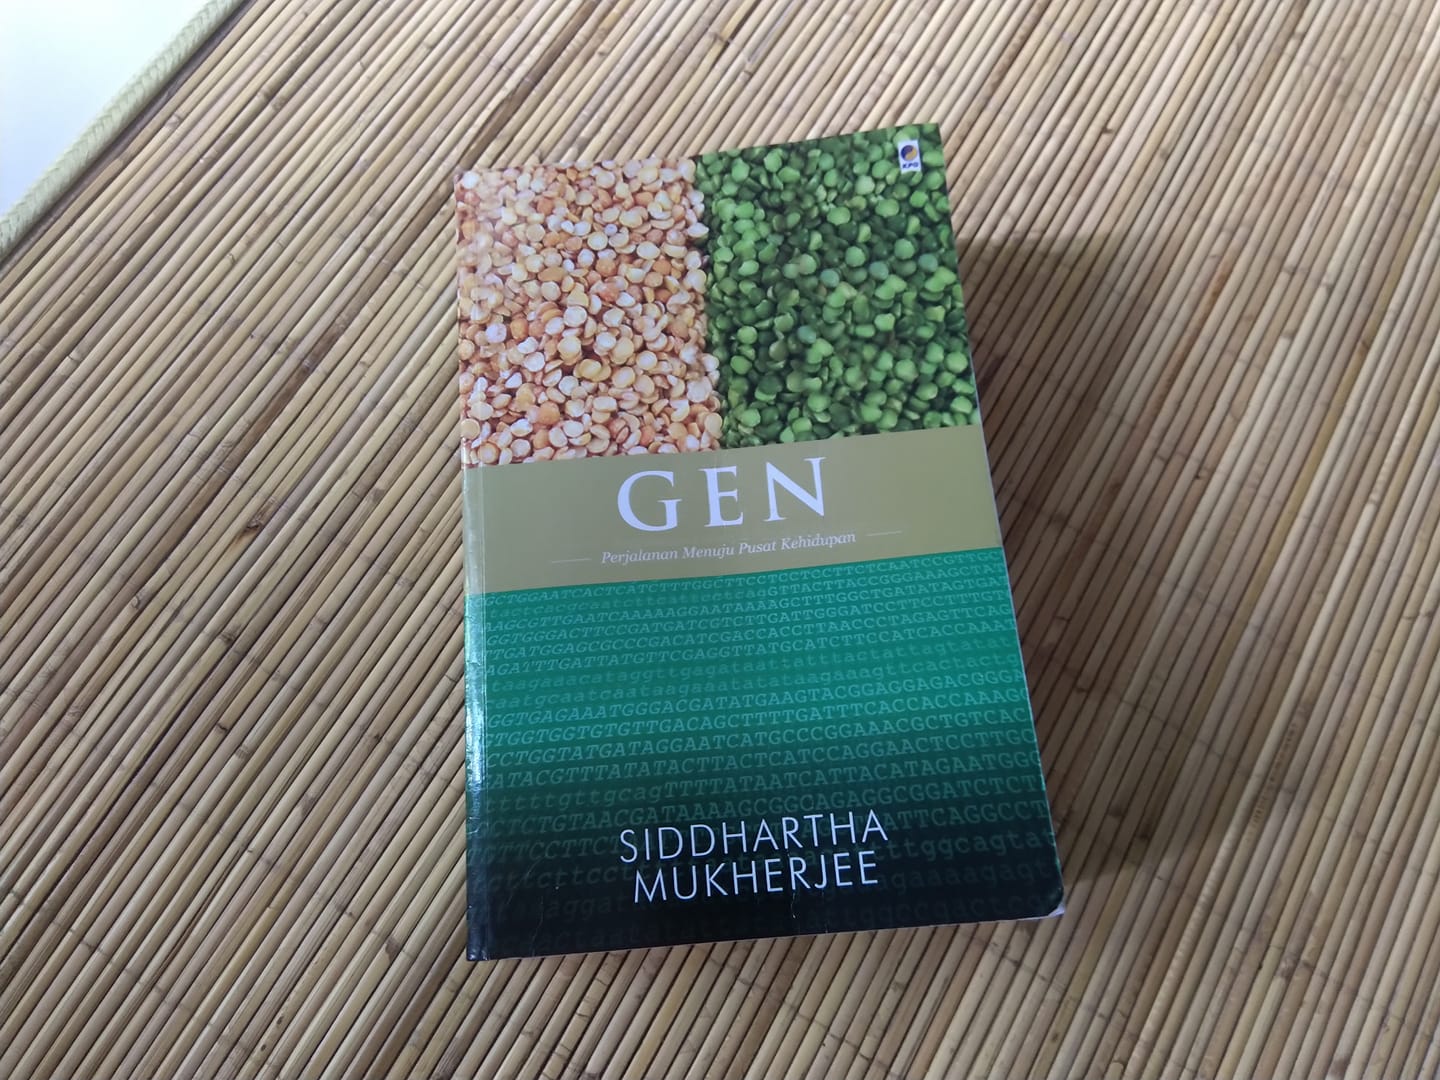 buku gen karya siddharta mukherjee